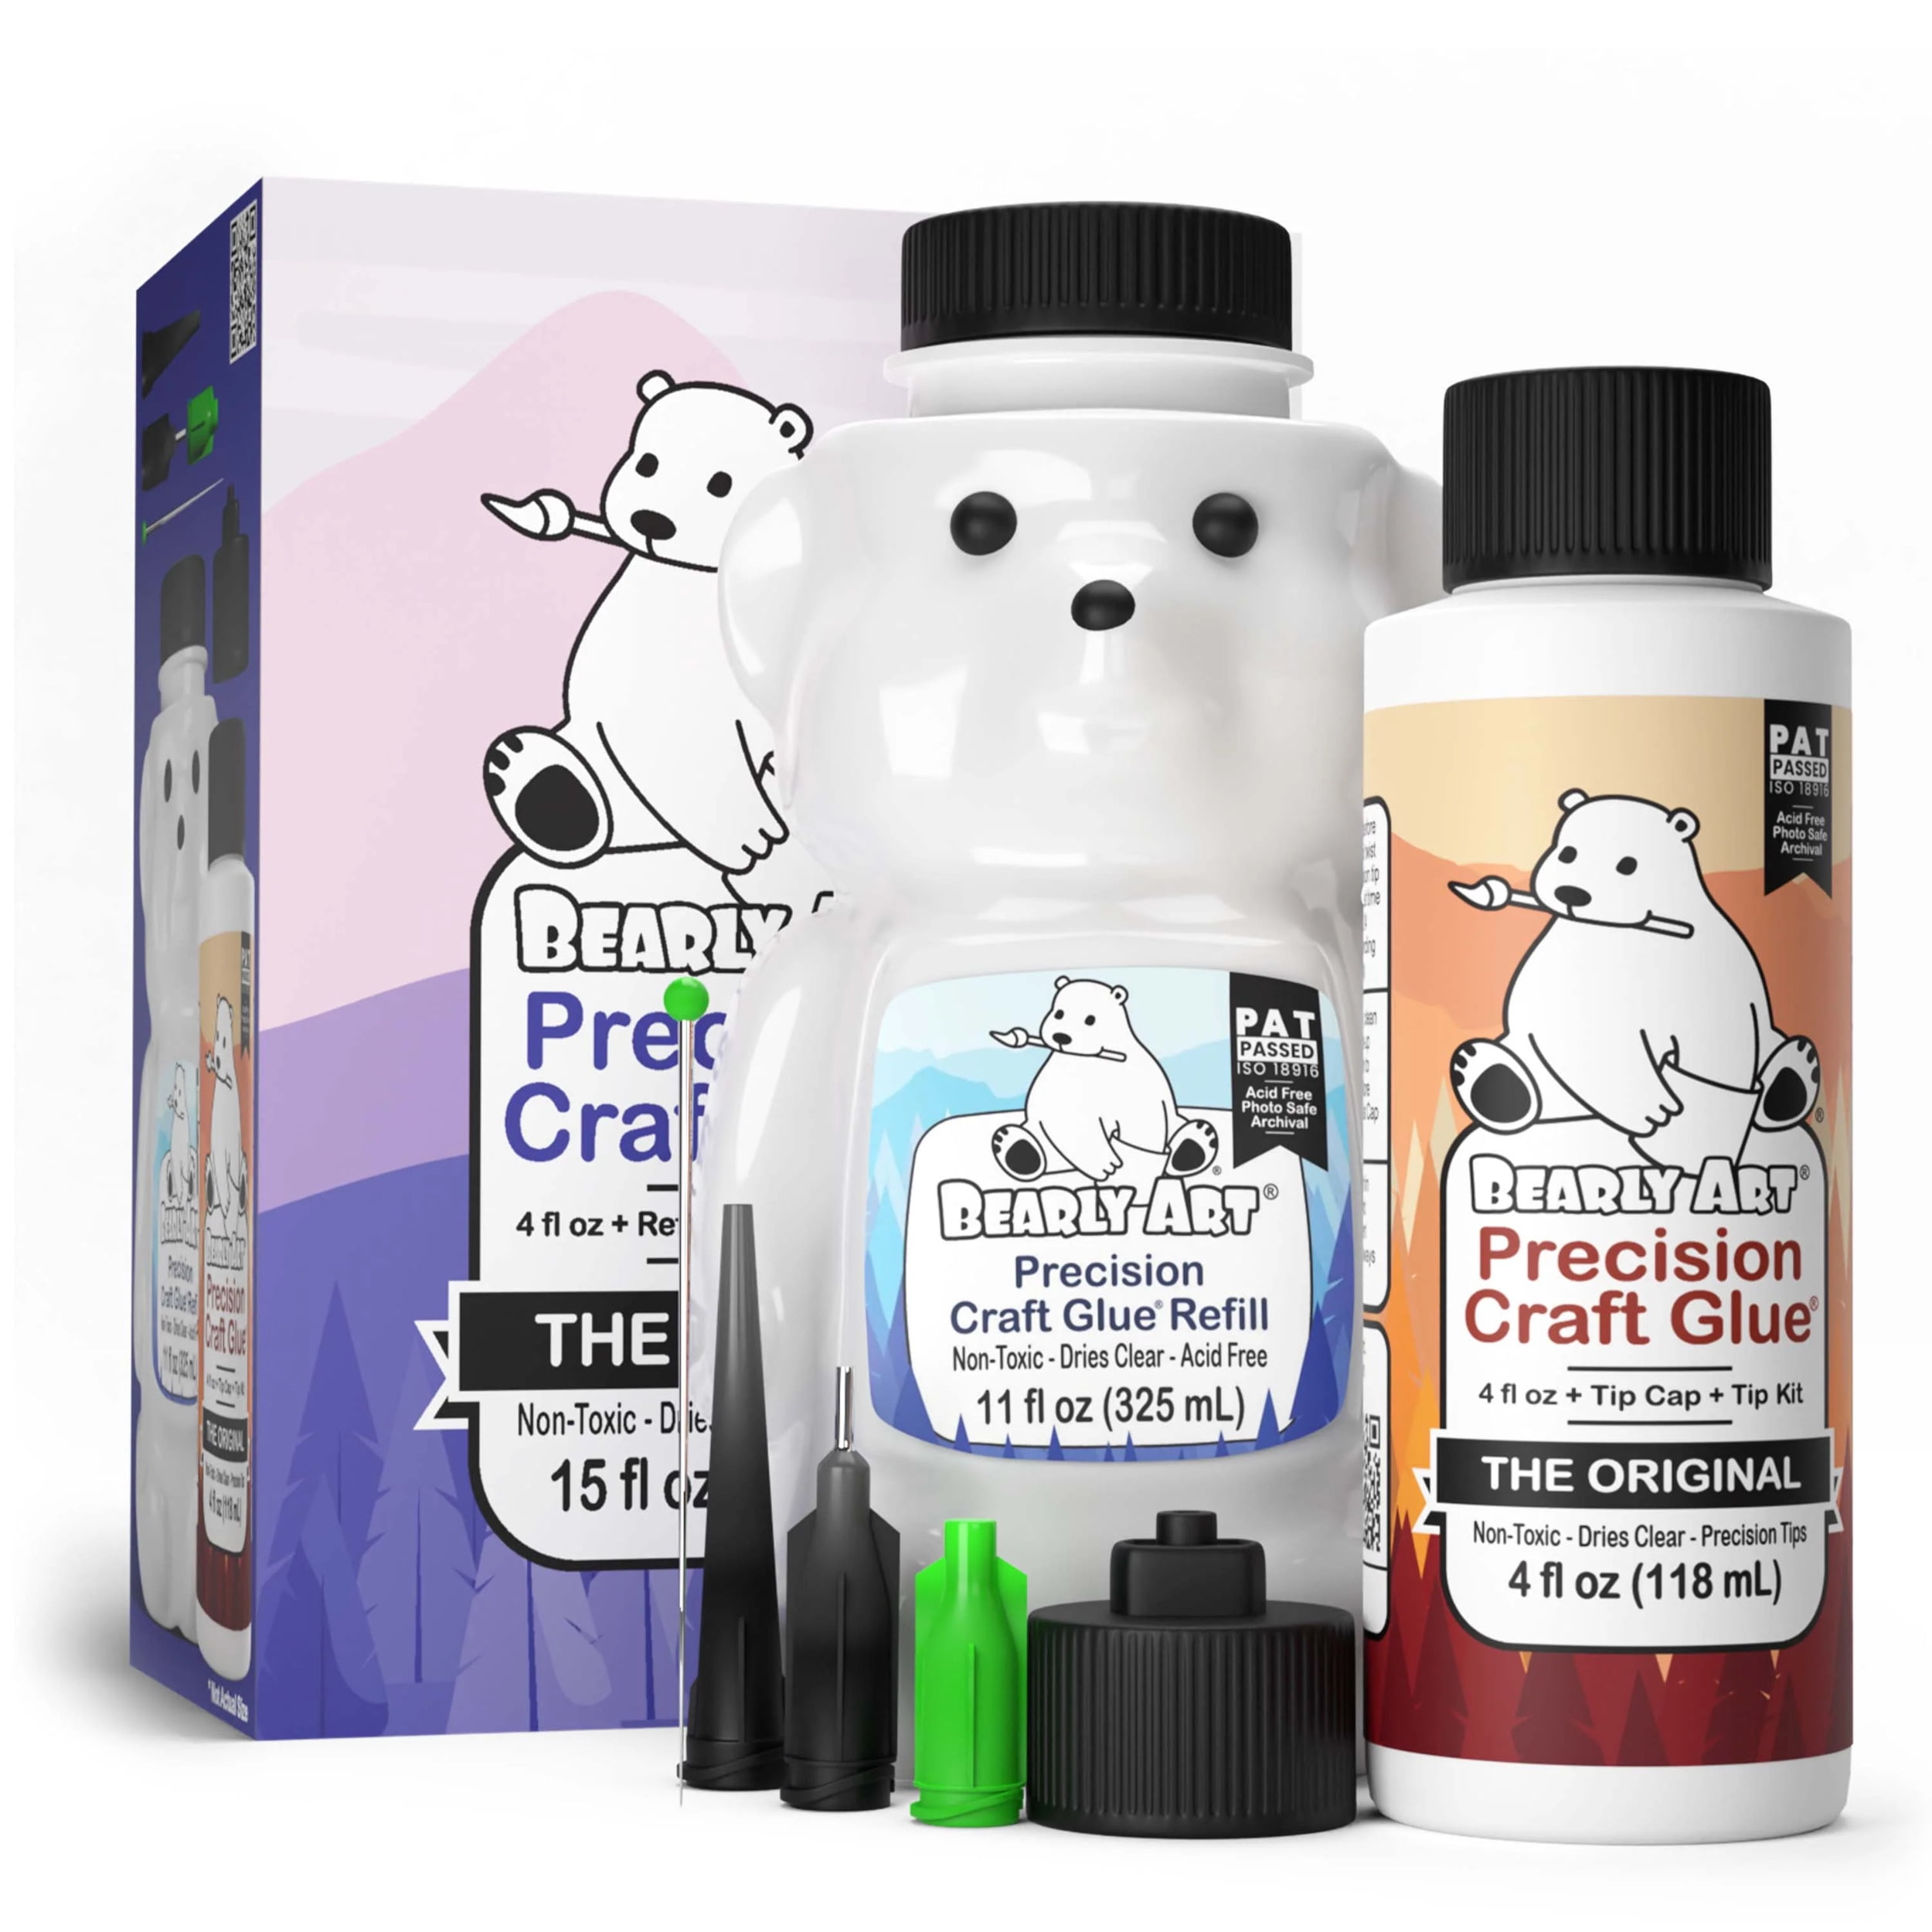 ARTIS Craft Glue - Perfect for Paper - Precision Tips and No Clog Pin Bundle - 4 fl oz 